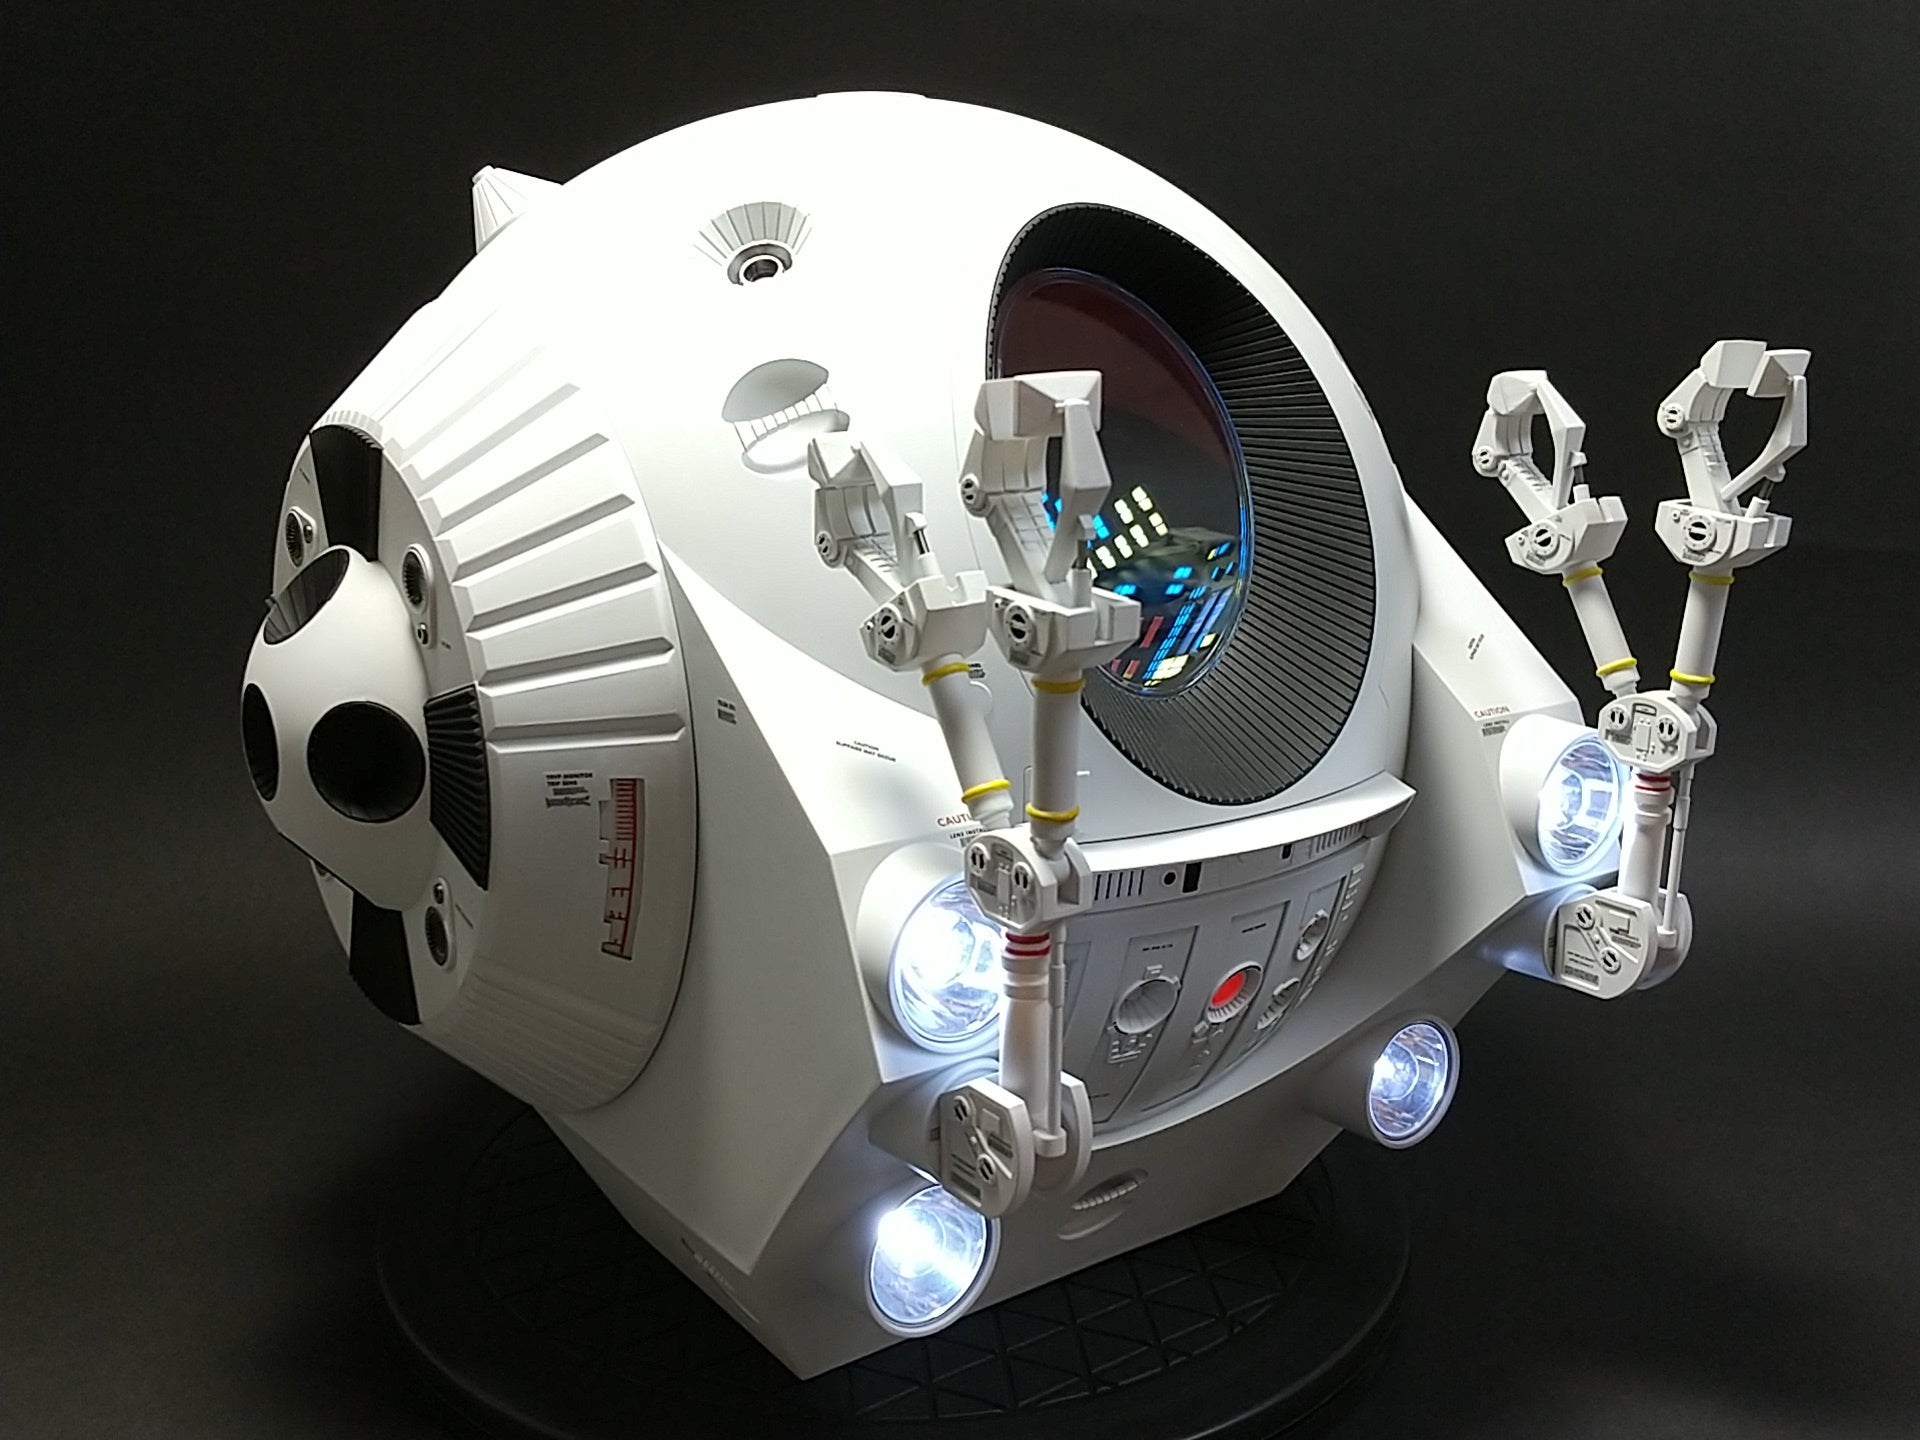 2001年宇宙の旅 メビウスモデル 1/8 EVA pod スペースポッド 電飾改修 